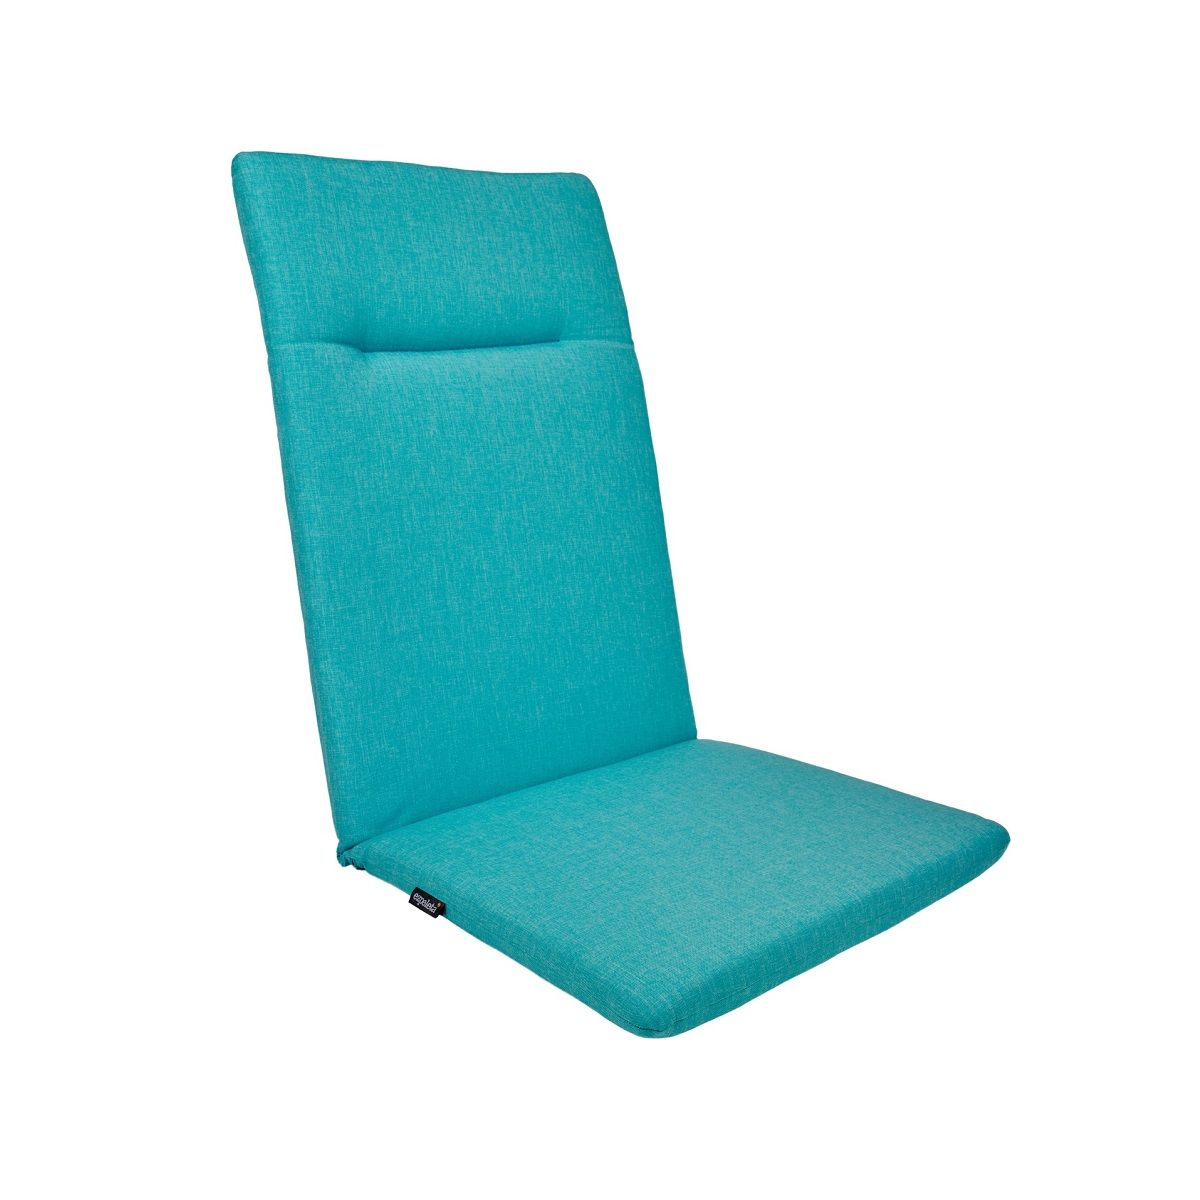 Coussins pour fauteuil de jardin : colorez votre extérieur !